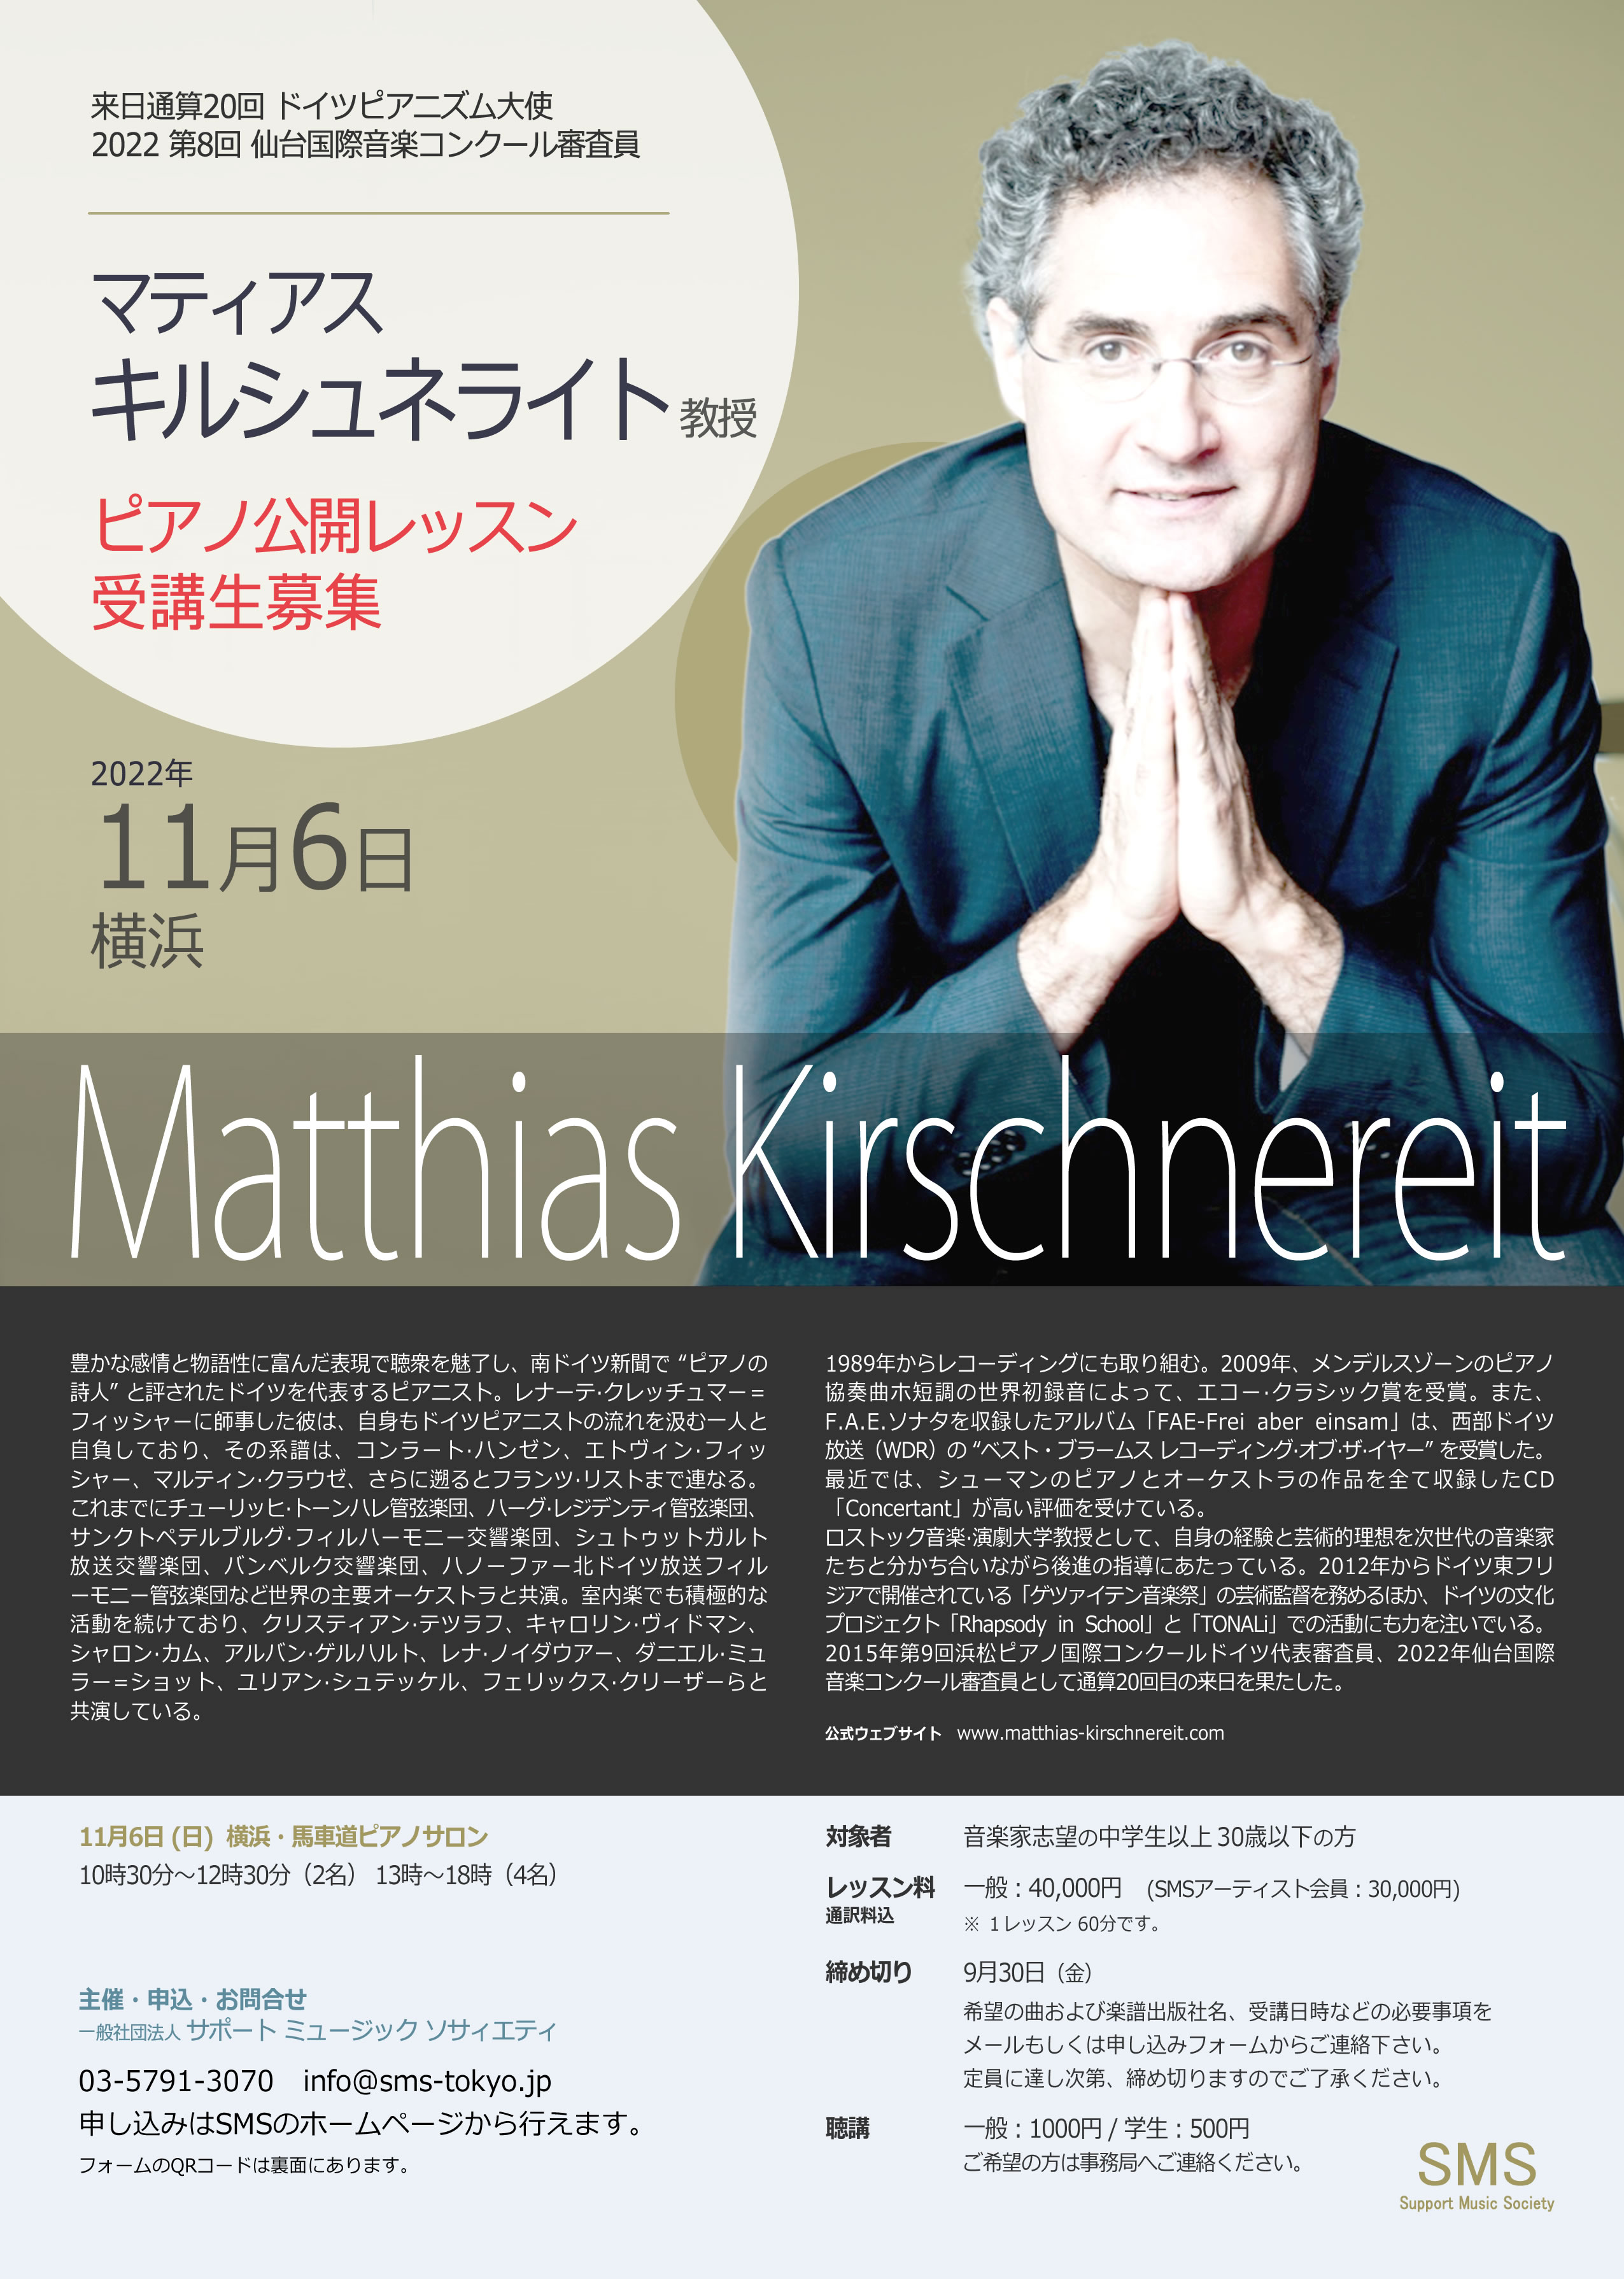 マティアス・キルシュネライト ピアノリサイタル Matthias Kirschnereit Piano Recital 来日通算18回 ドイツピアニズム大使